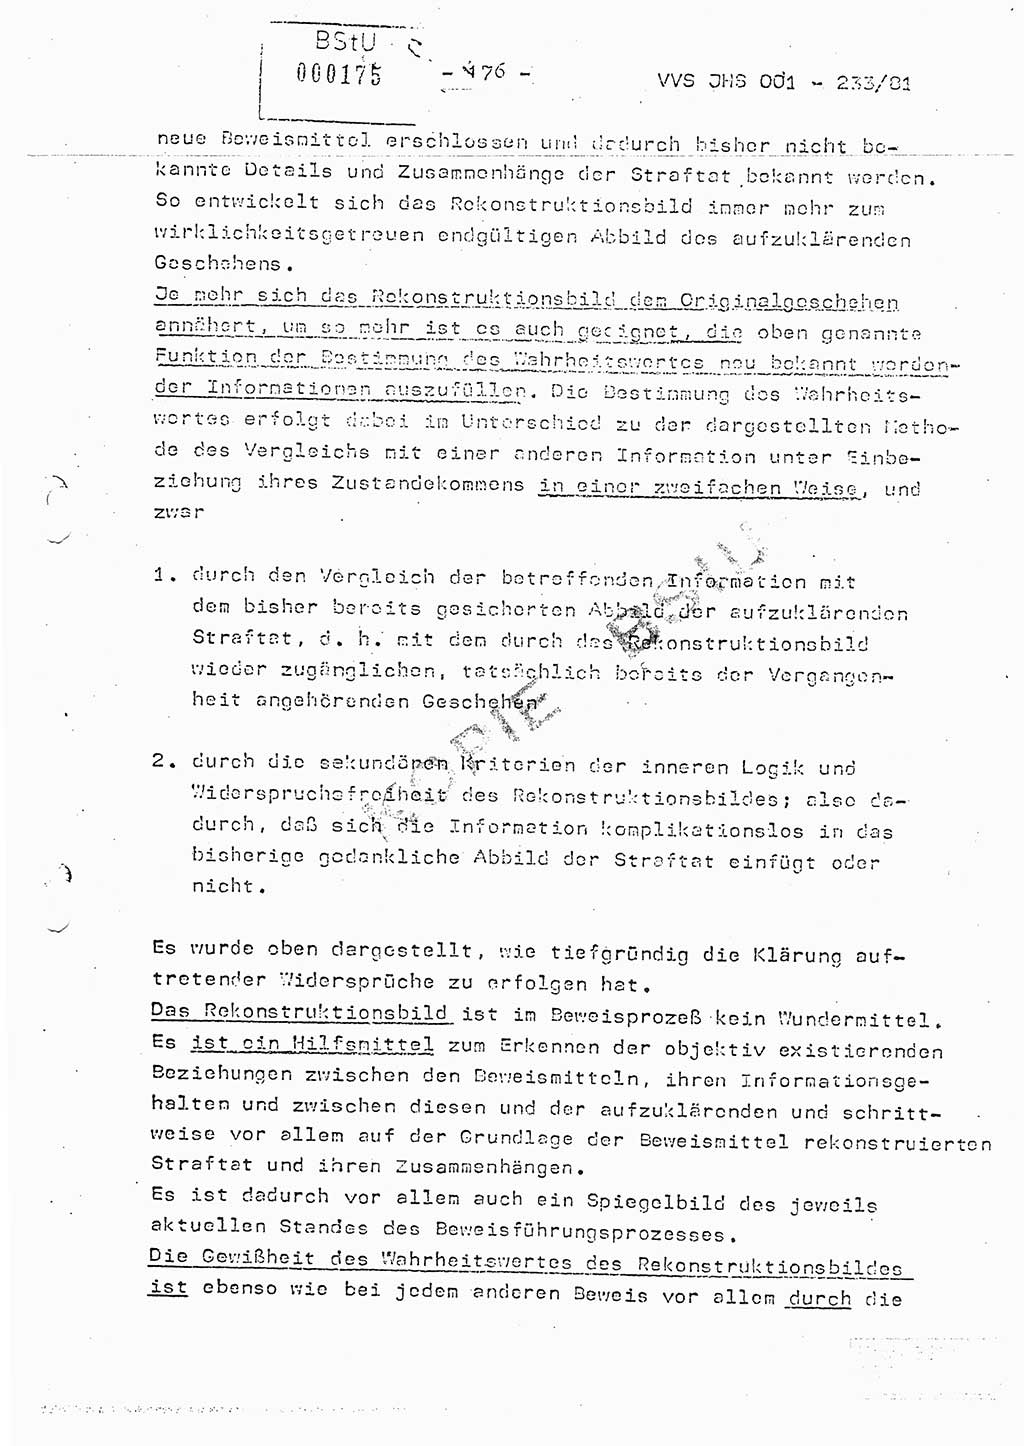 Dissertation Oberstleutnant Horst Zank (JHS), Oberstleutnant Dr. Karl-Heinz Knoblauch (JHS), Oberstleutnant Gustav-Adolf Kowalewski (HA Ⅸ), Oberstleutnant Wolfgang Plötner (HA Ⅸ), Ministerium für Staatssicherheit (MfS) [Deutsche Demokratische Republik (DDR)], Juristische Hochschule (JHS), Vertrauliche Verschlußsache (VVS) o001-233/81, Potsdam 1981, Blatt 176 (Diss. MfS DDR JHS VVS o001-233/81 1981, Bl. 176)